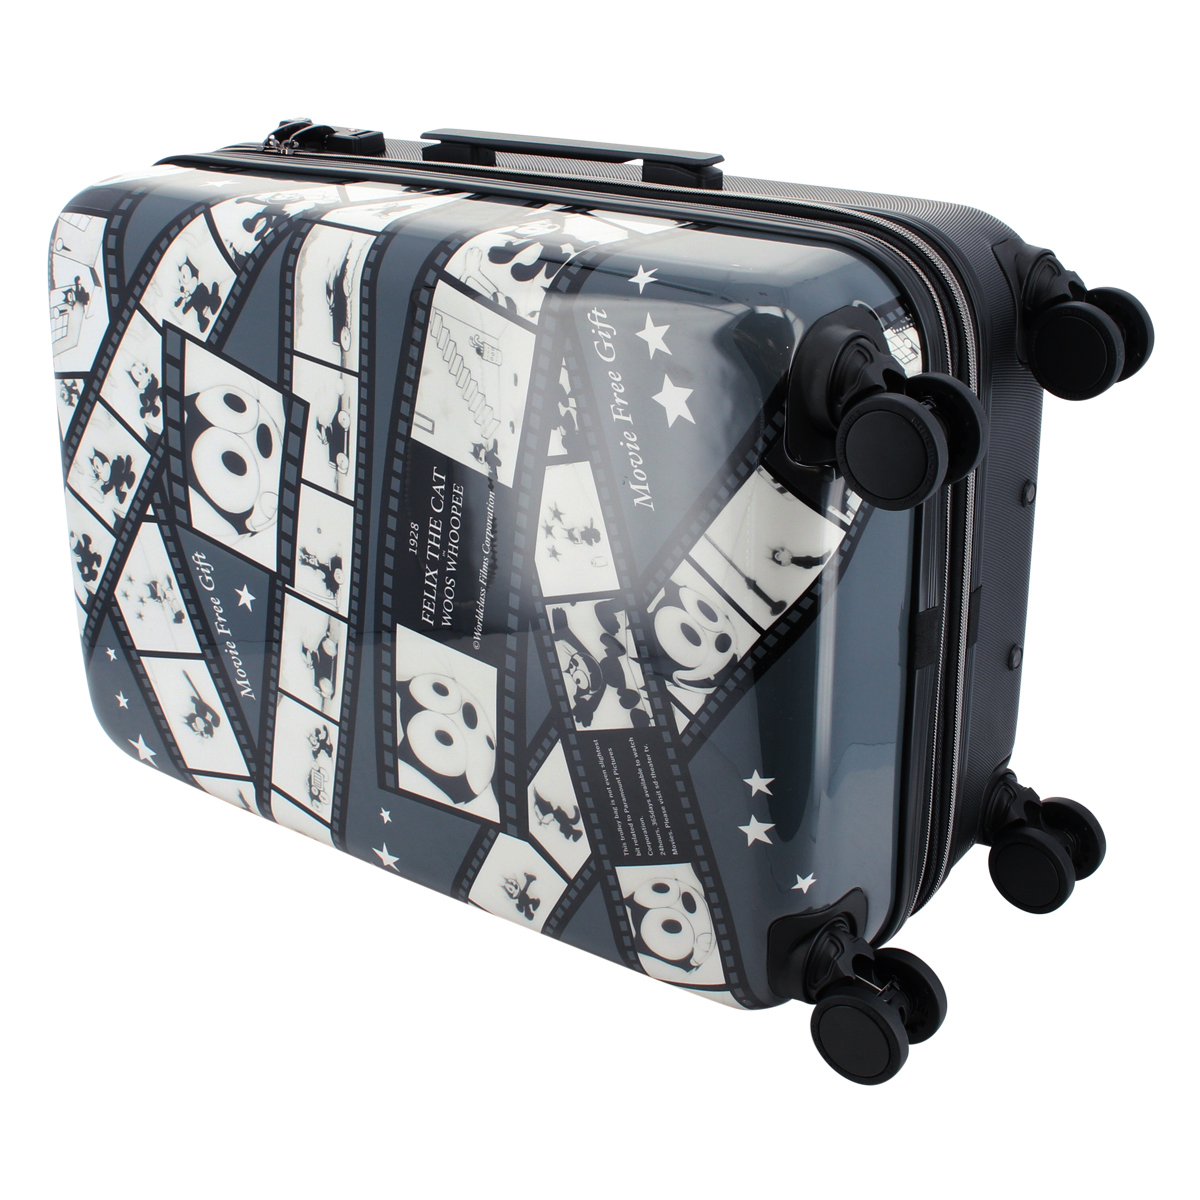 フィリックスザキャット スーツケース 54L 55cm 2.7kg FX-002 FELIX THE CAT ハード ファスナー キャリーバッグ  キャリーケース 1年保証 _sale